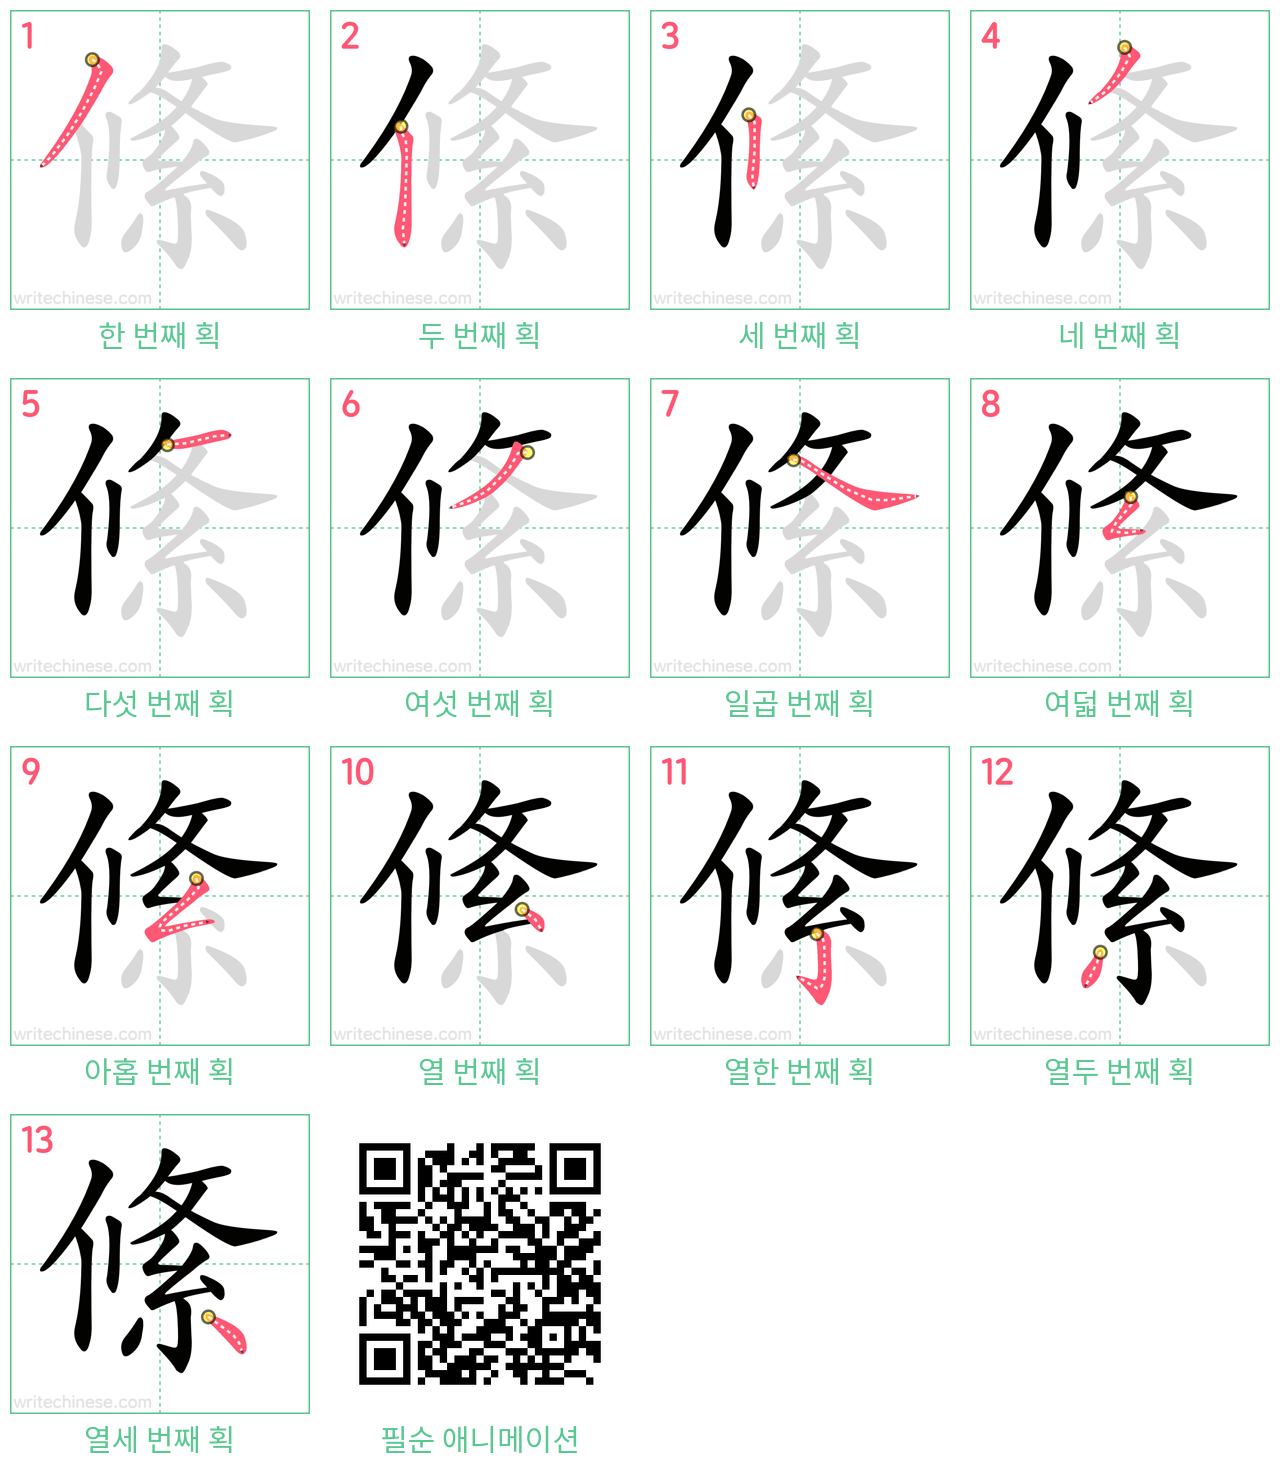 絛 step-by-step stroke order diagrams